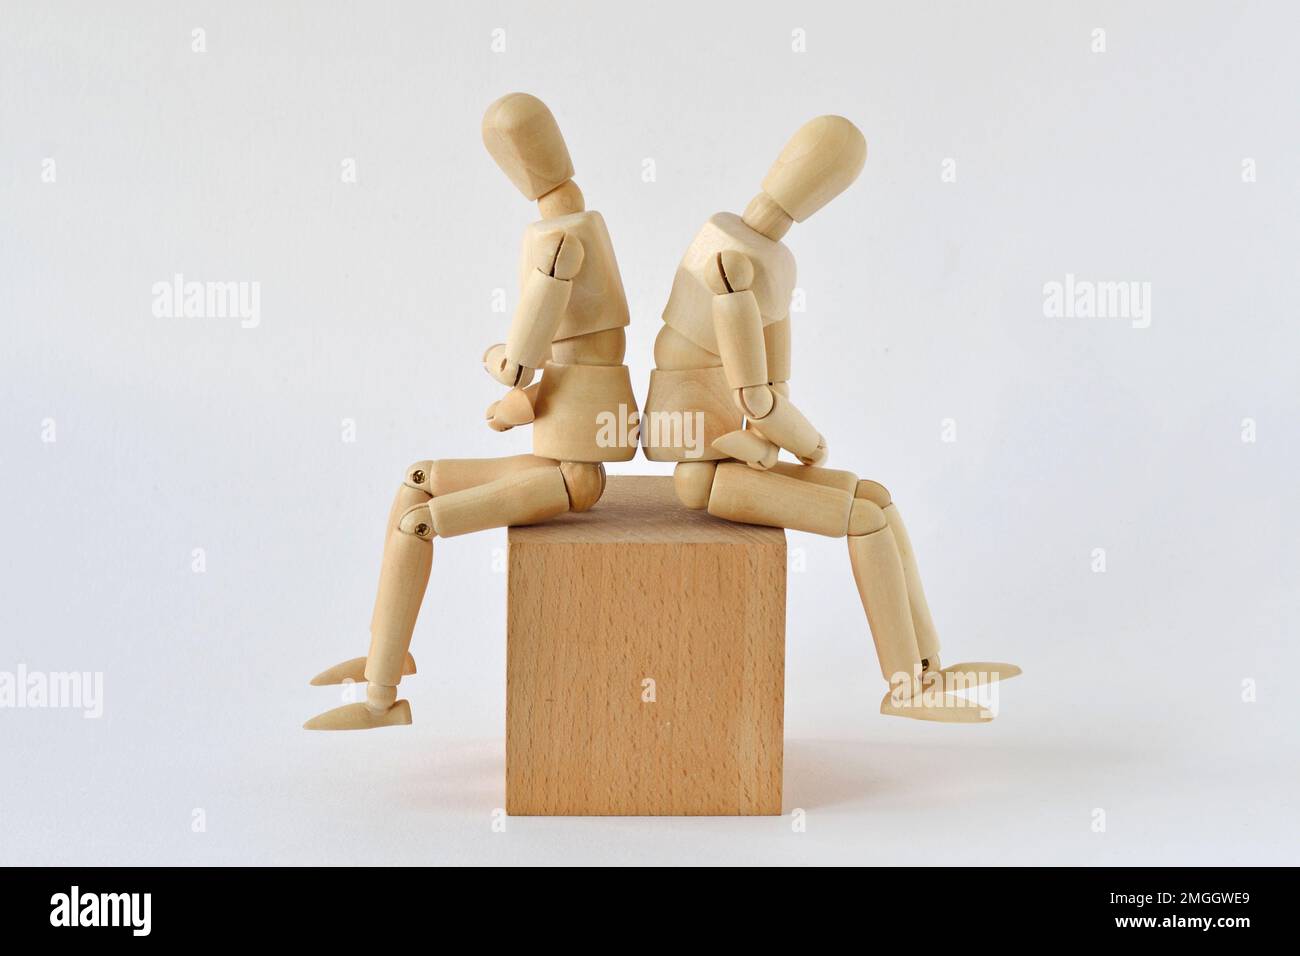 Deux mannequins en bois assis dos à dos sur un bloc de bois - concept de querelle et des problèmes de relation Banque D'Images